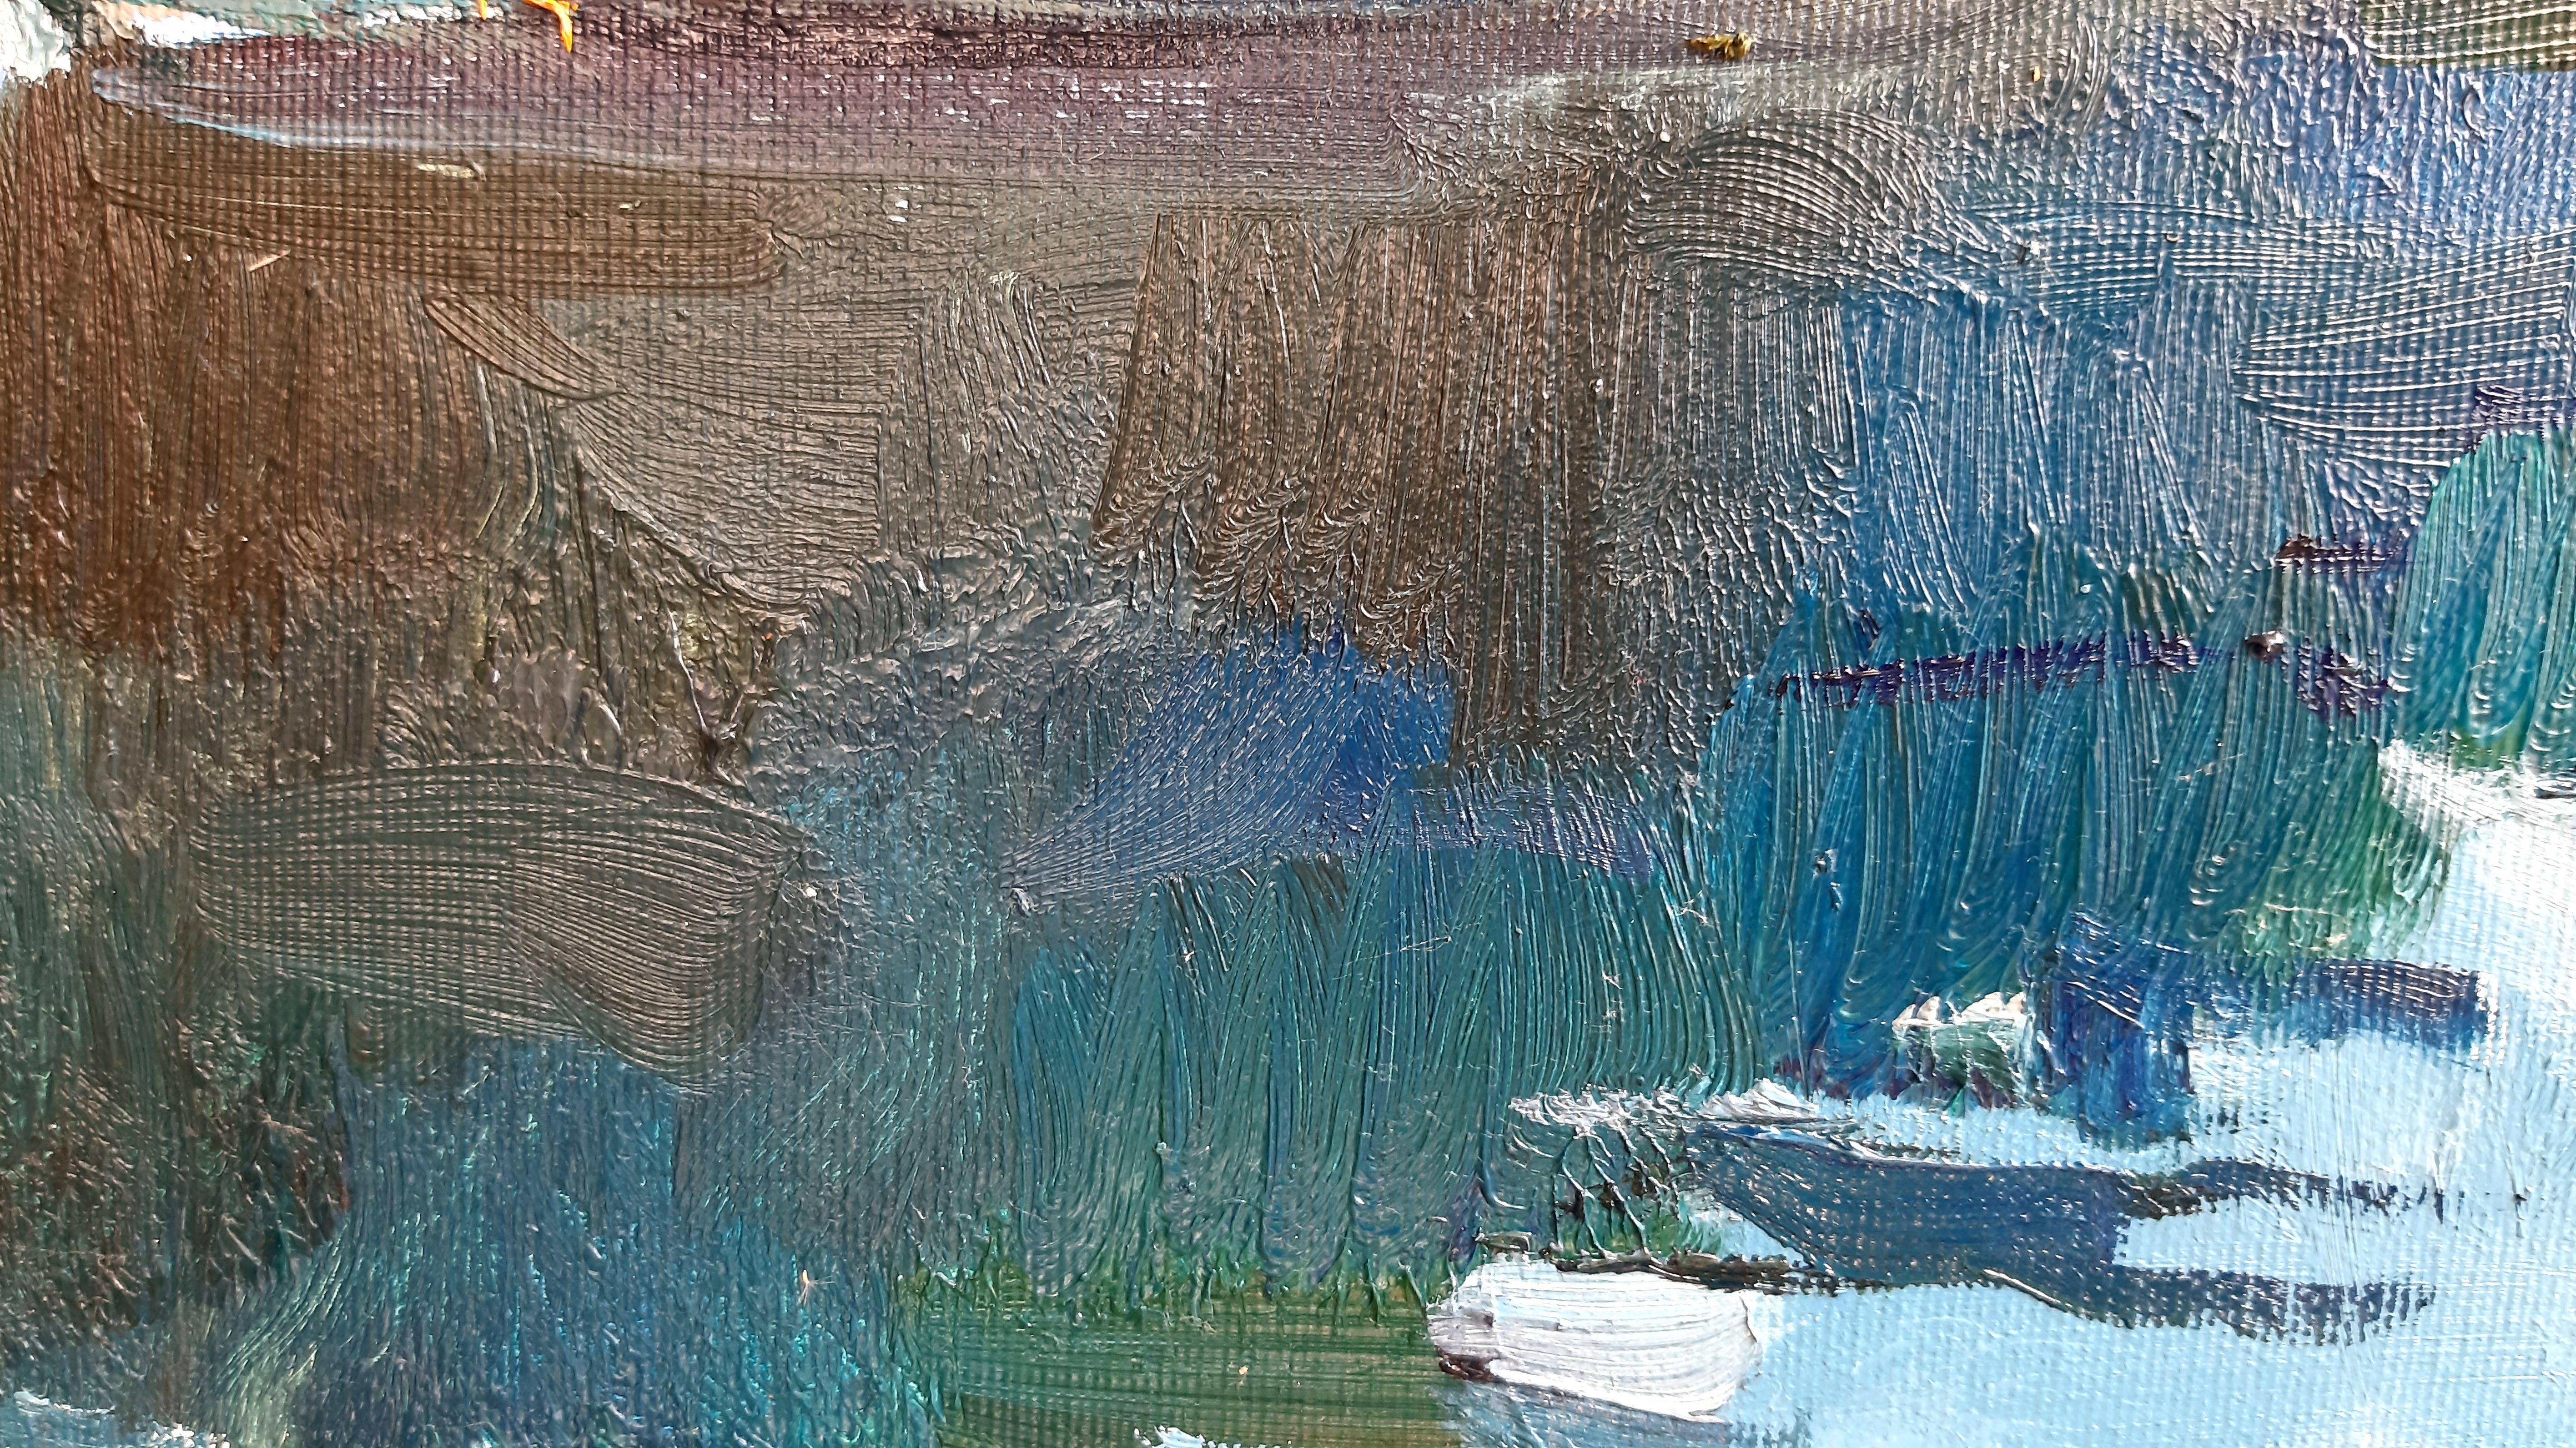 Wharf – maritime Landschaft, Gemälde in Farben Blau, Grün, Weiß, Braun und Grau 6